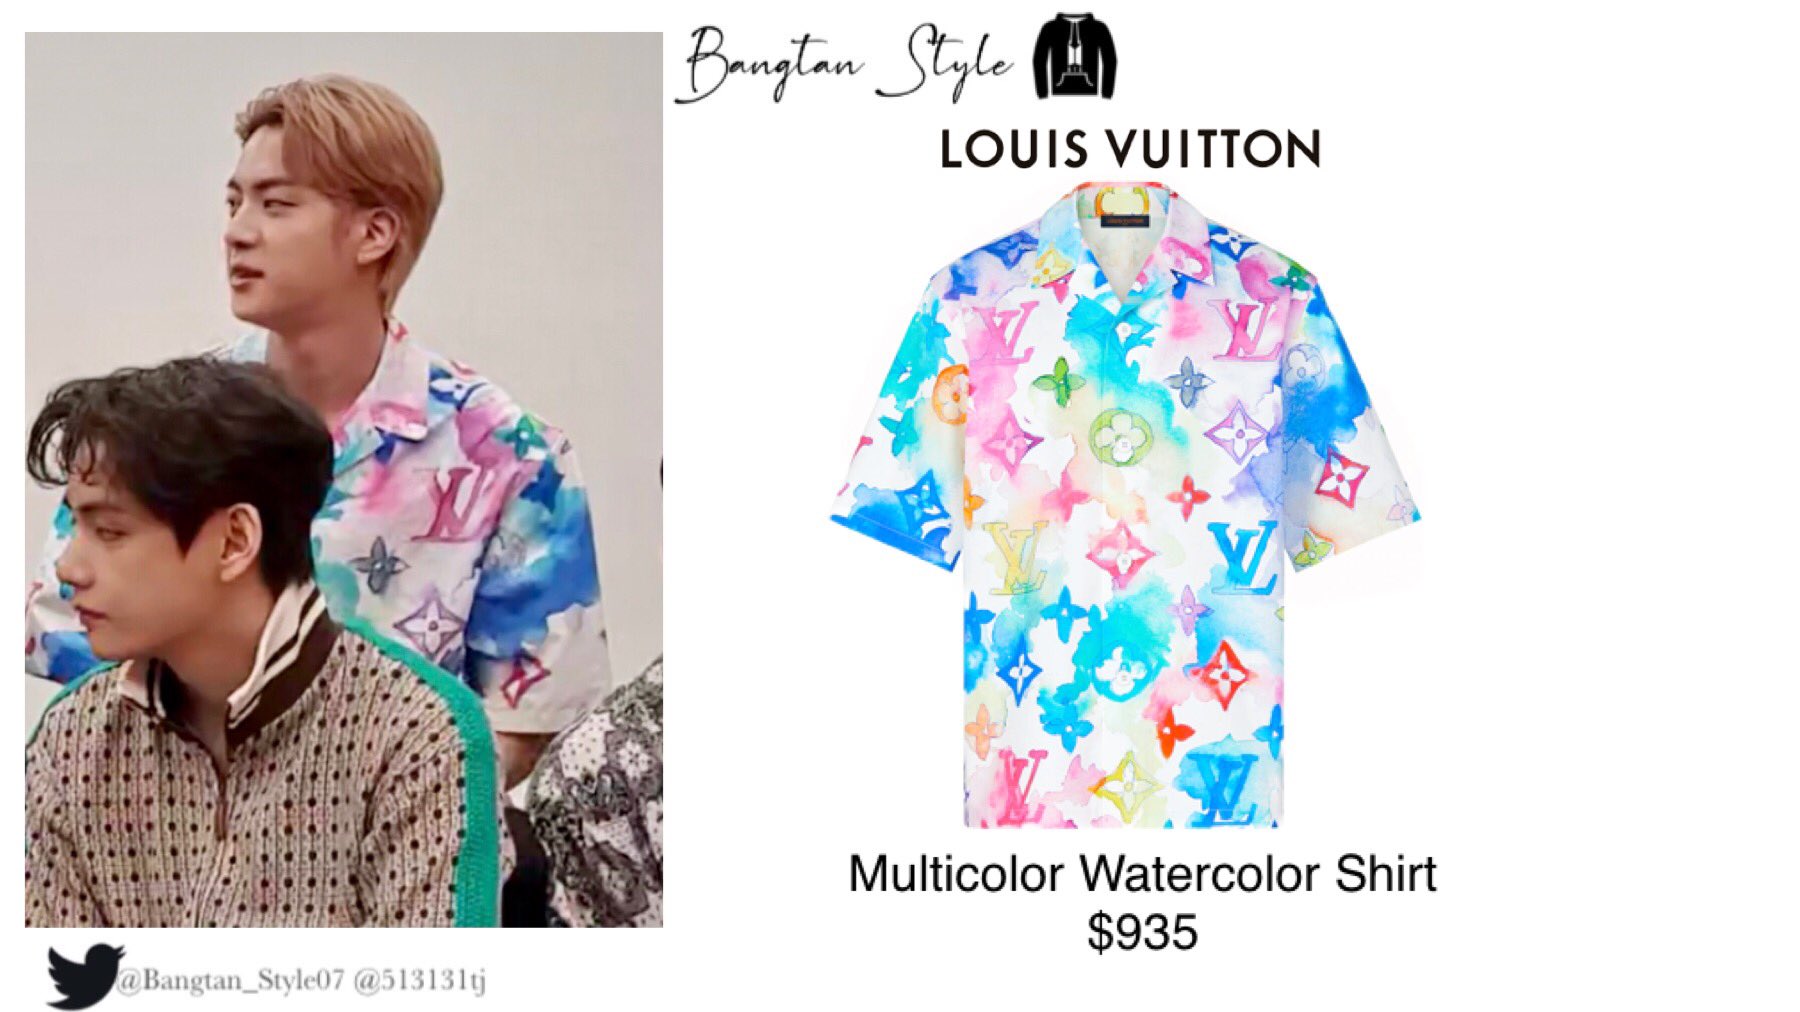 Louis Vuitton Louis Vuitton Multicolor Watercolor Shirt 2021